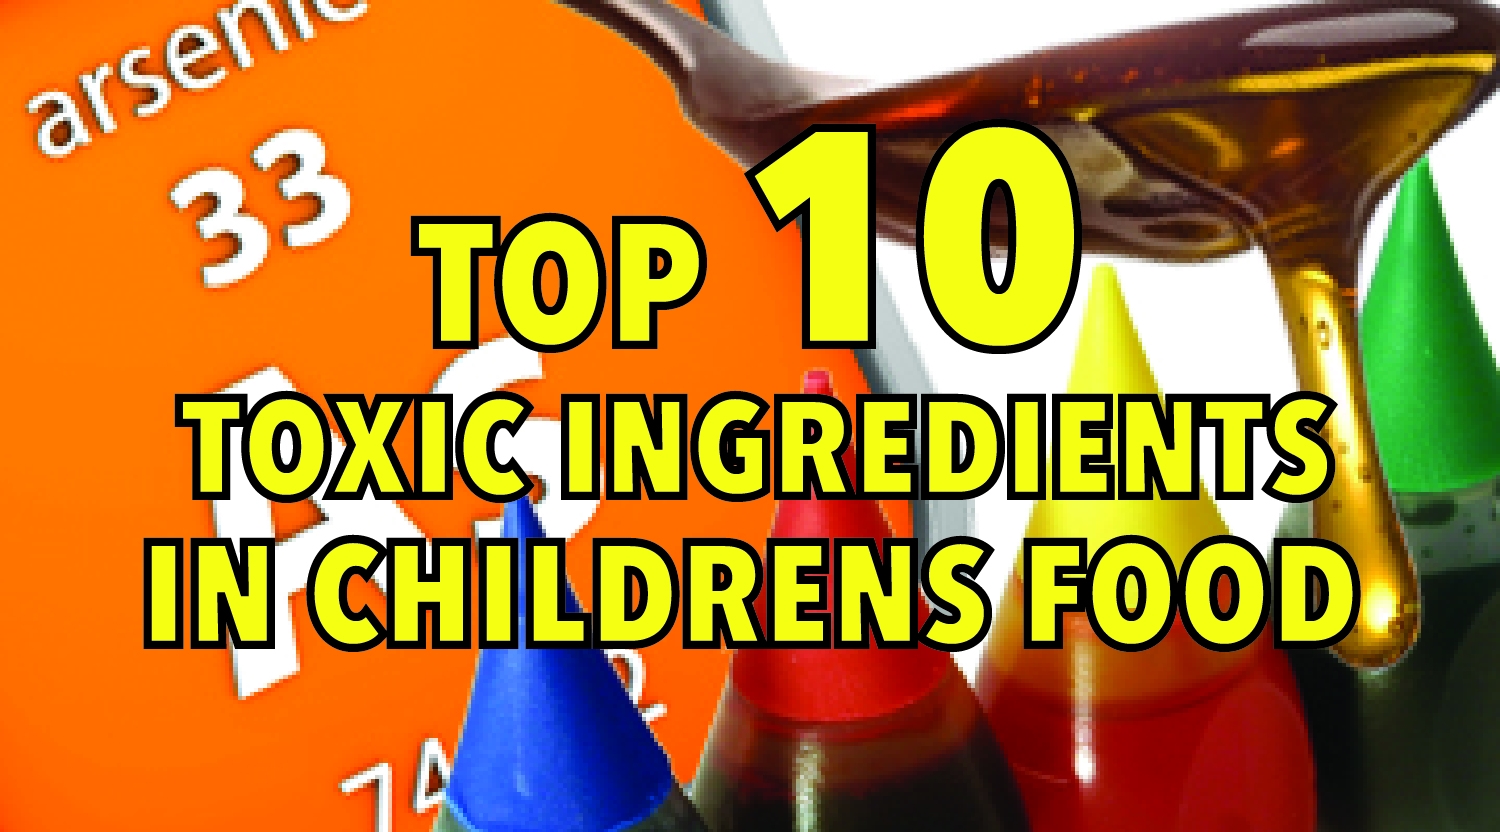 Top 10 toxic ingredients in children’s food